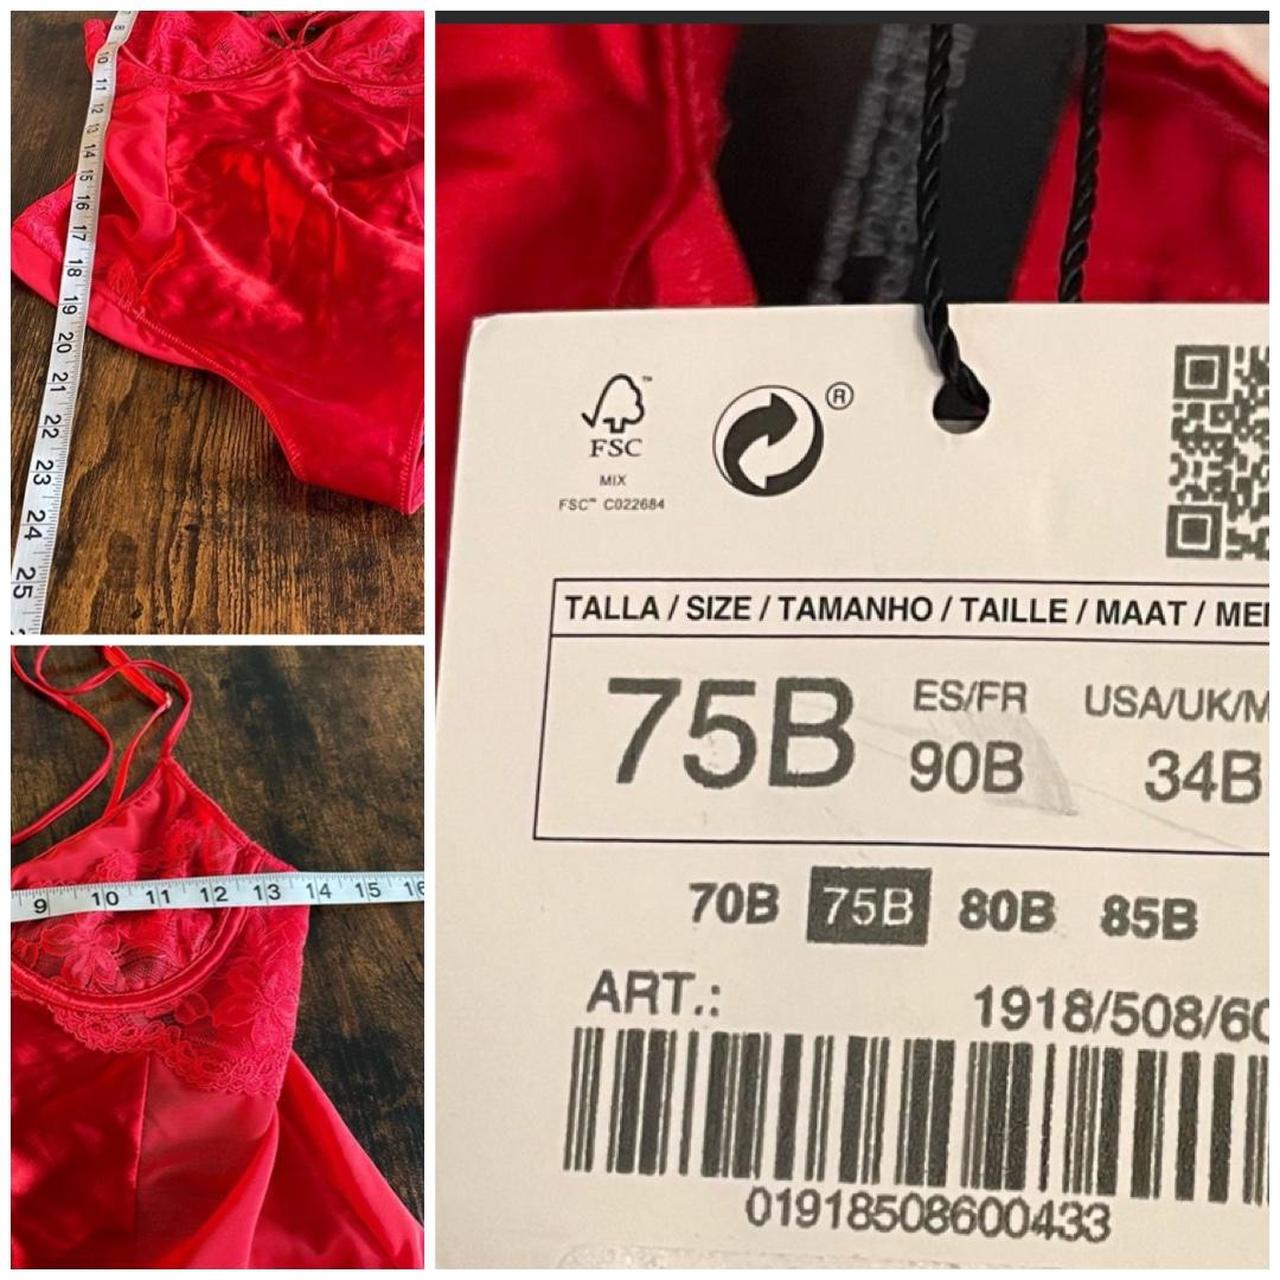 Zara lingerie red bodysuit teddy Size 34B Nwt - Depop